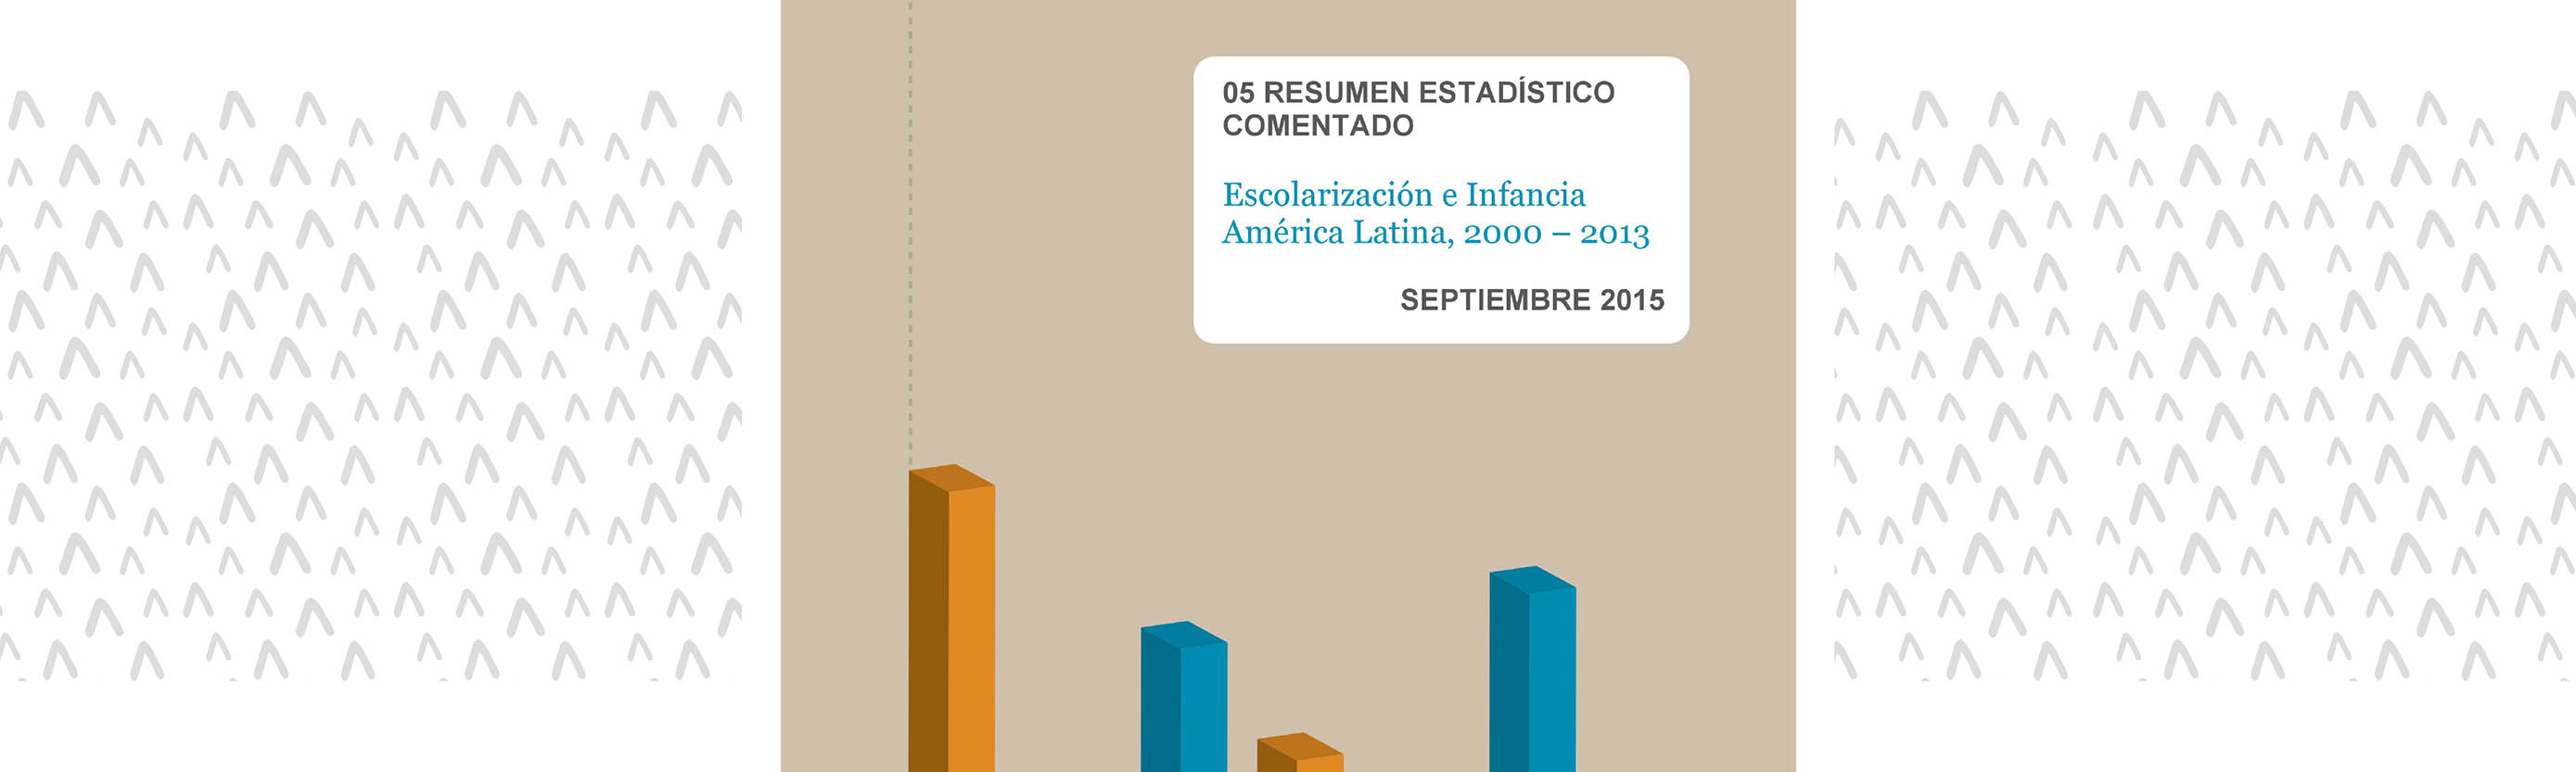 	Escolarización e infancia América Latina 2000 - 2013. Resumen estadístico comentado